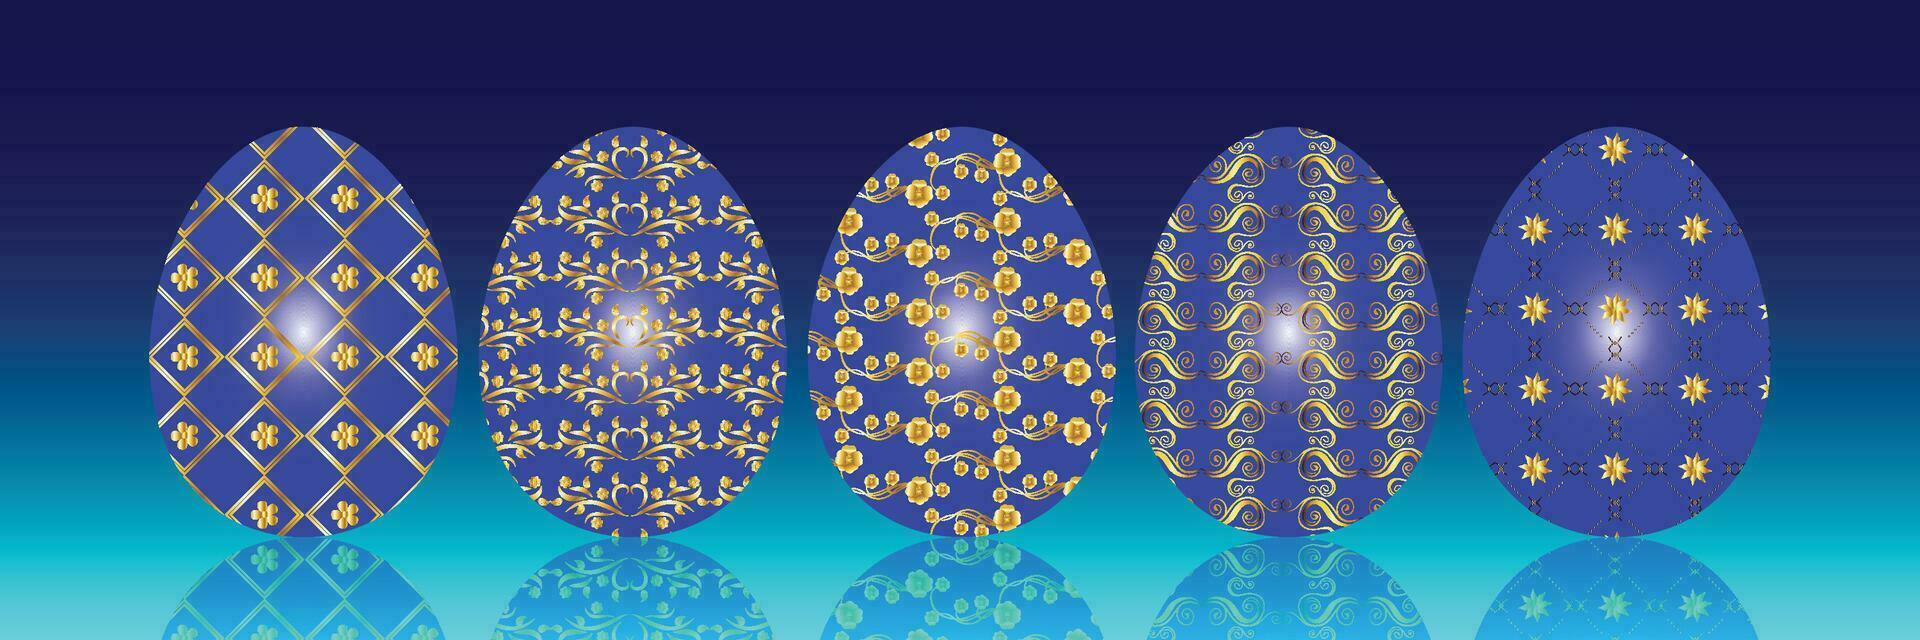 reeks van Pasen eieren met verschillend patronen in blauw en goud vector